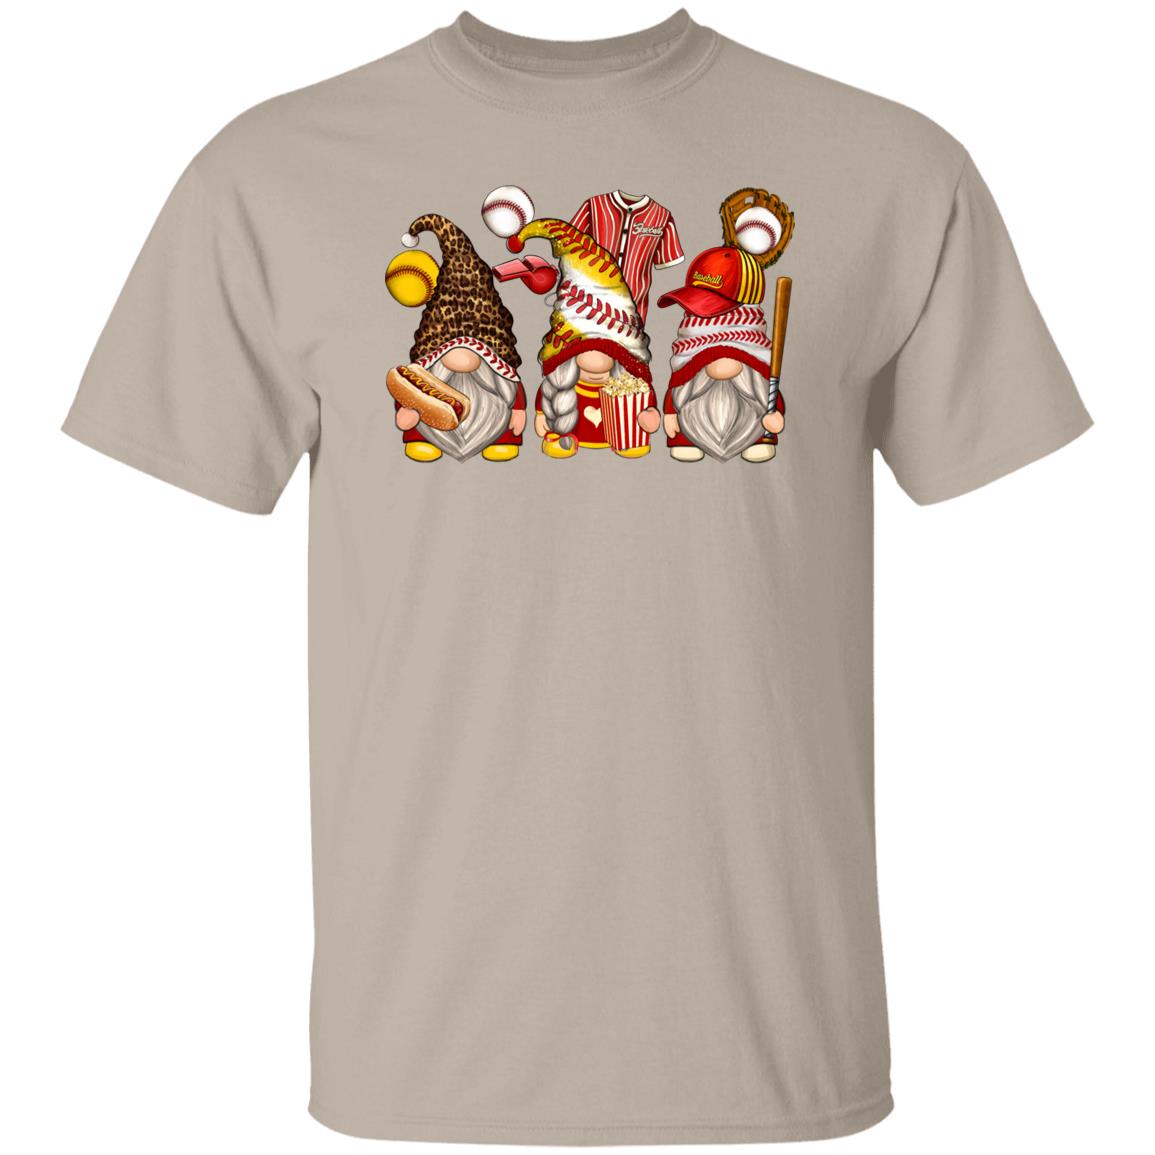 Baseball and softball Gnomes Unisex shirt softball player Christmas gift White Sand-Family-Gift-Planet